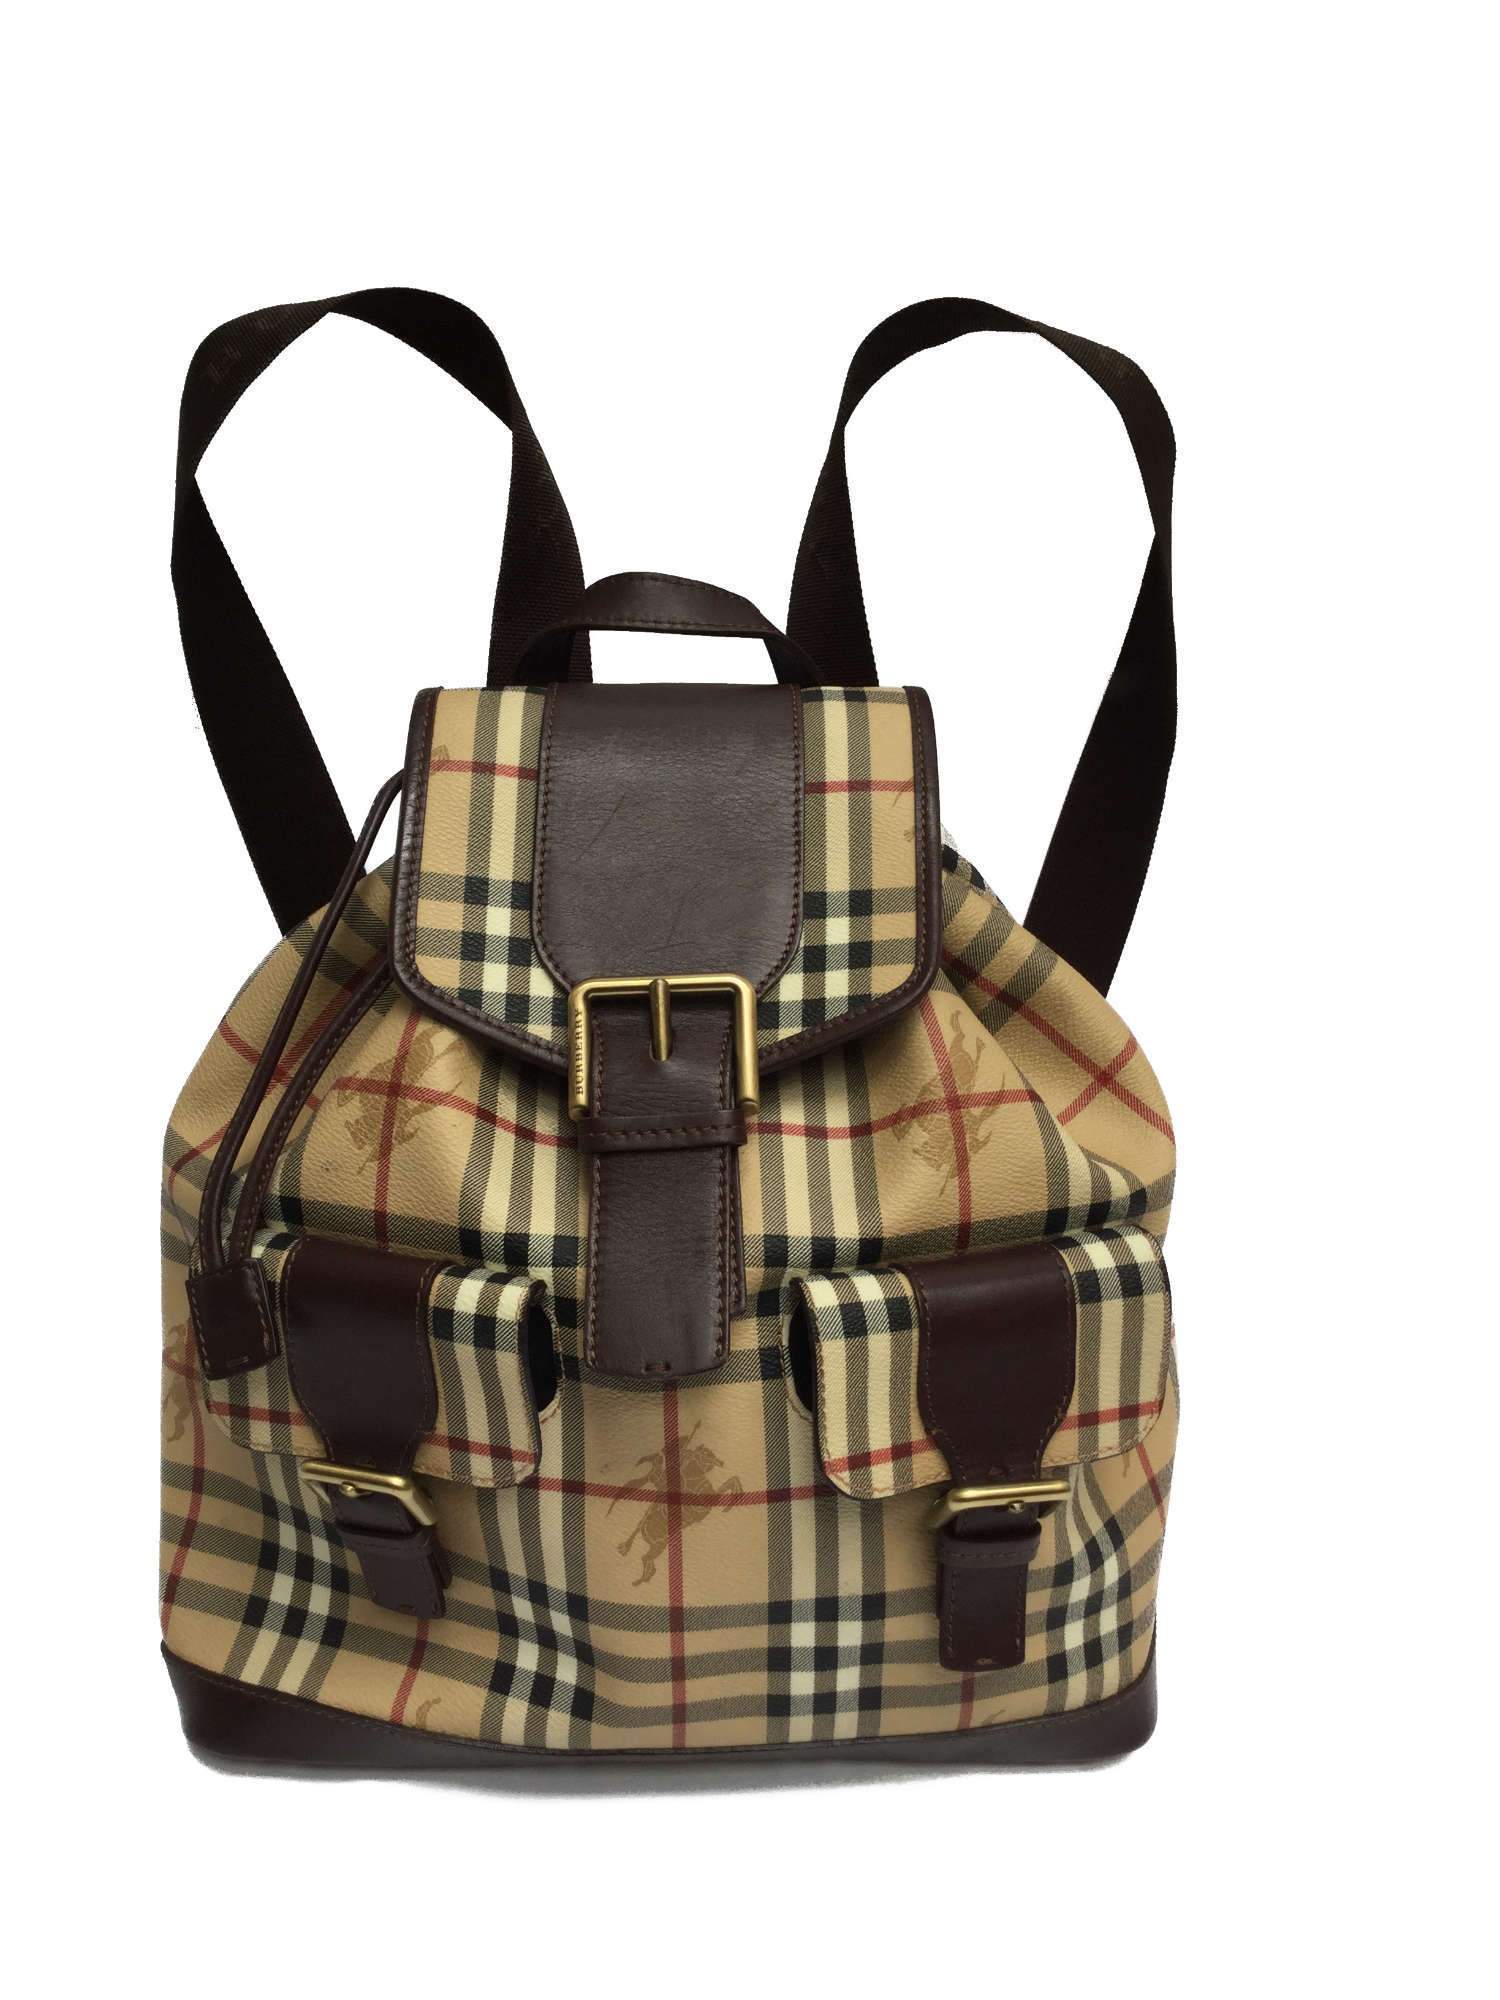 Nova Check Brown Beige Print Backpack Bag Gold Hardware-designer resale